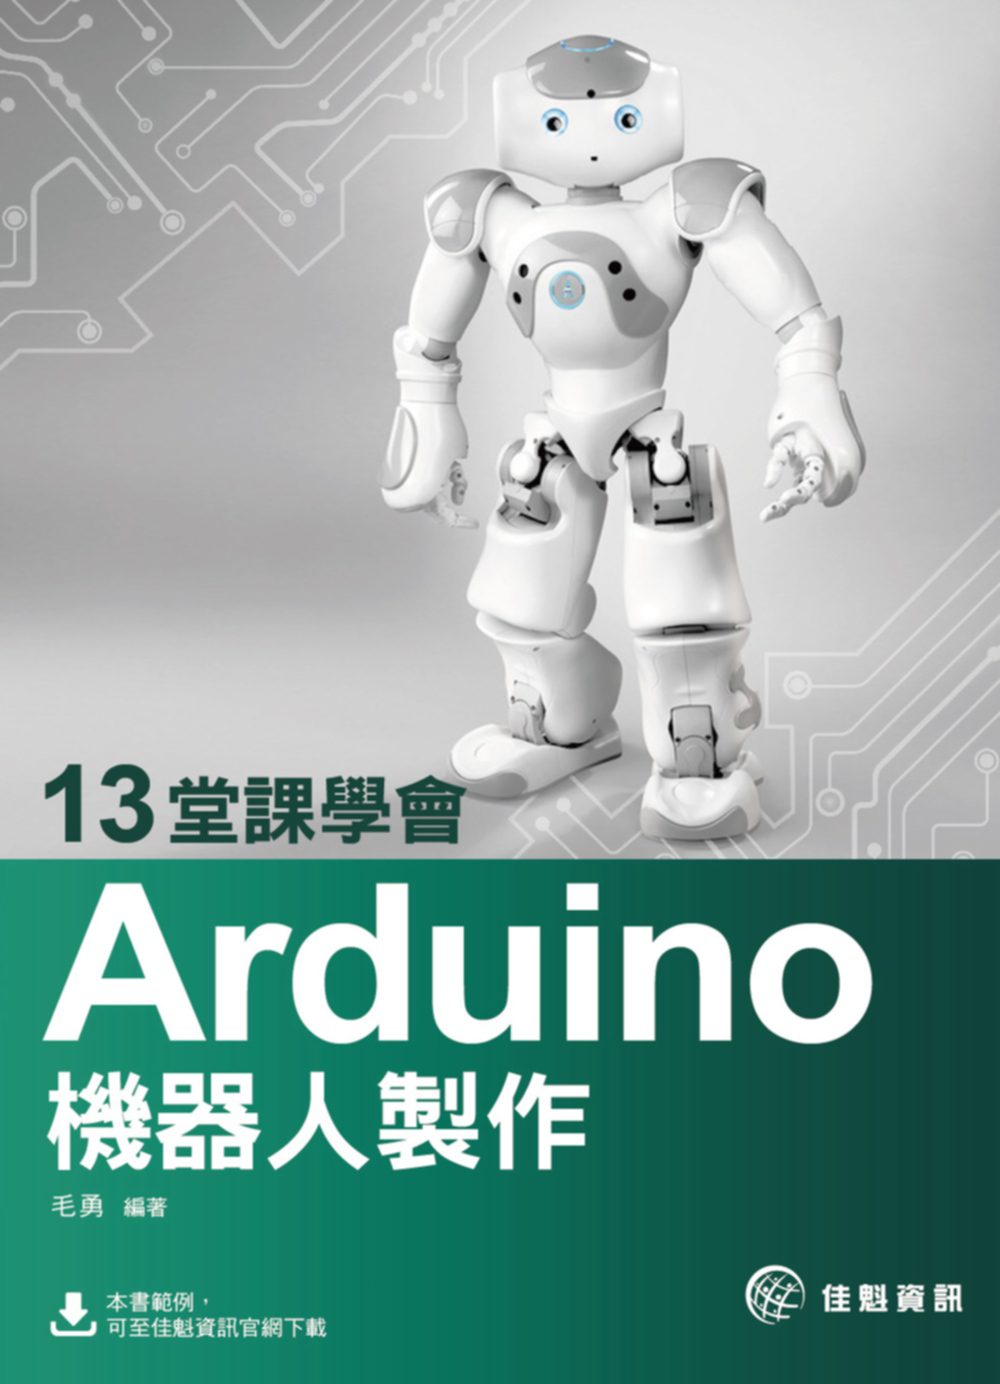 13堂課學會Arduino機器人製作